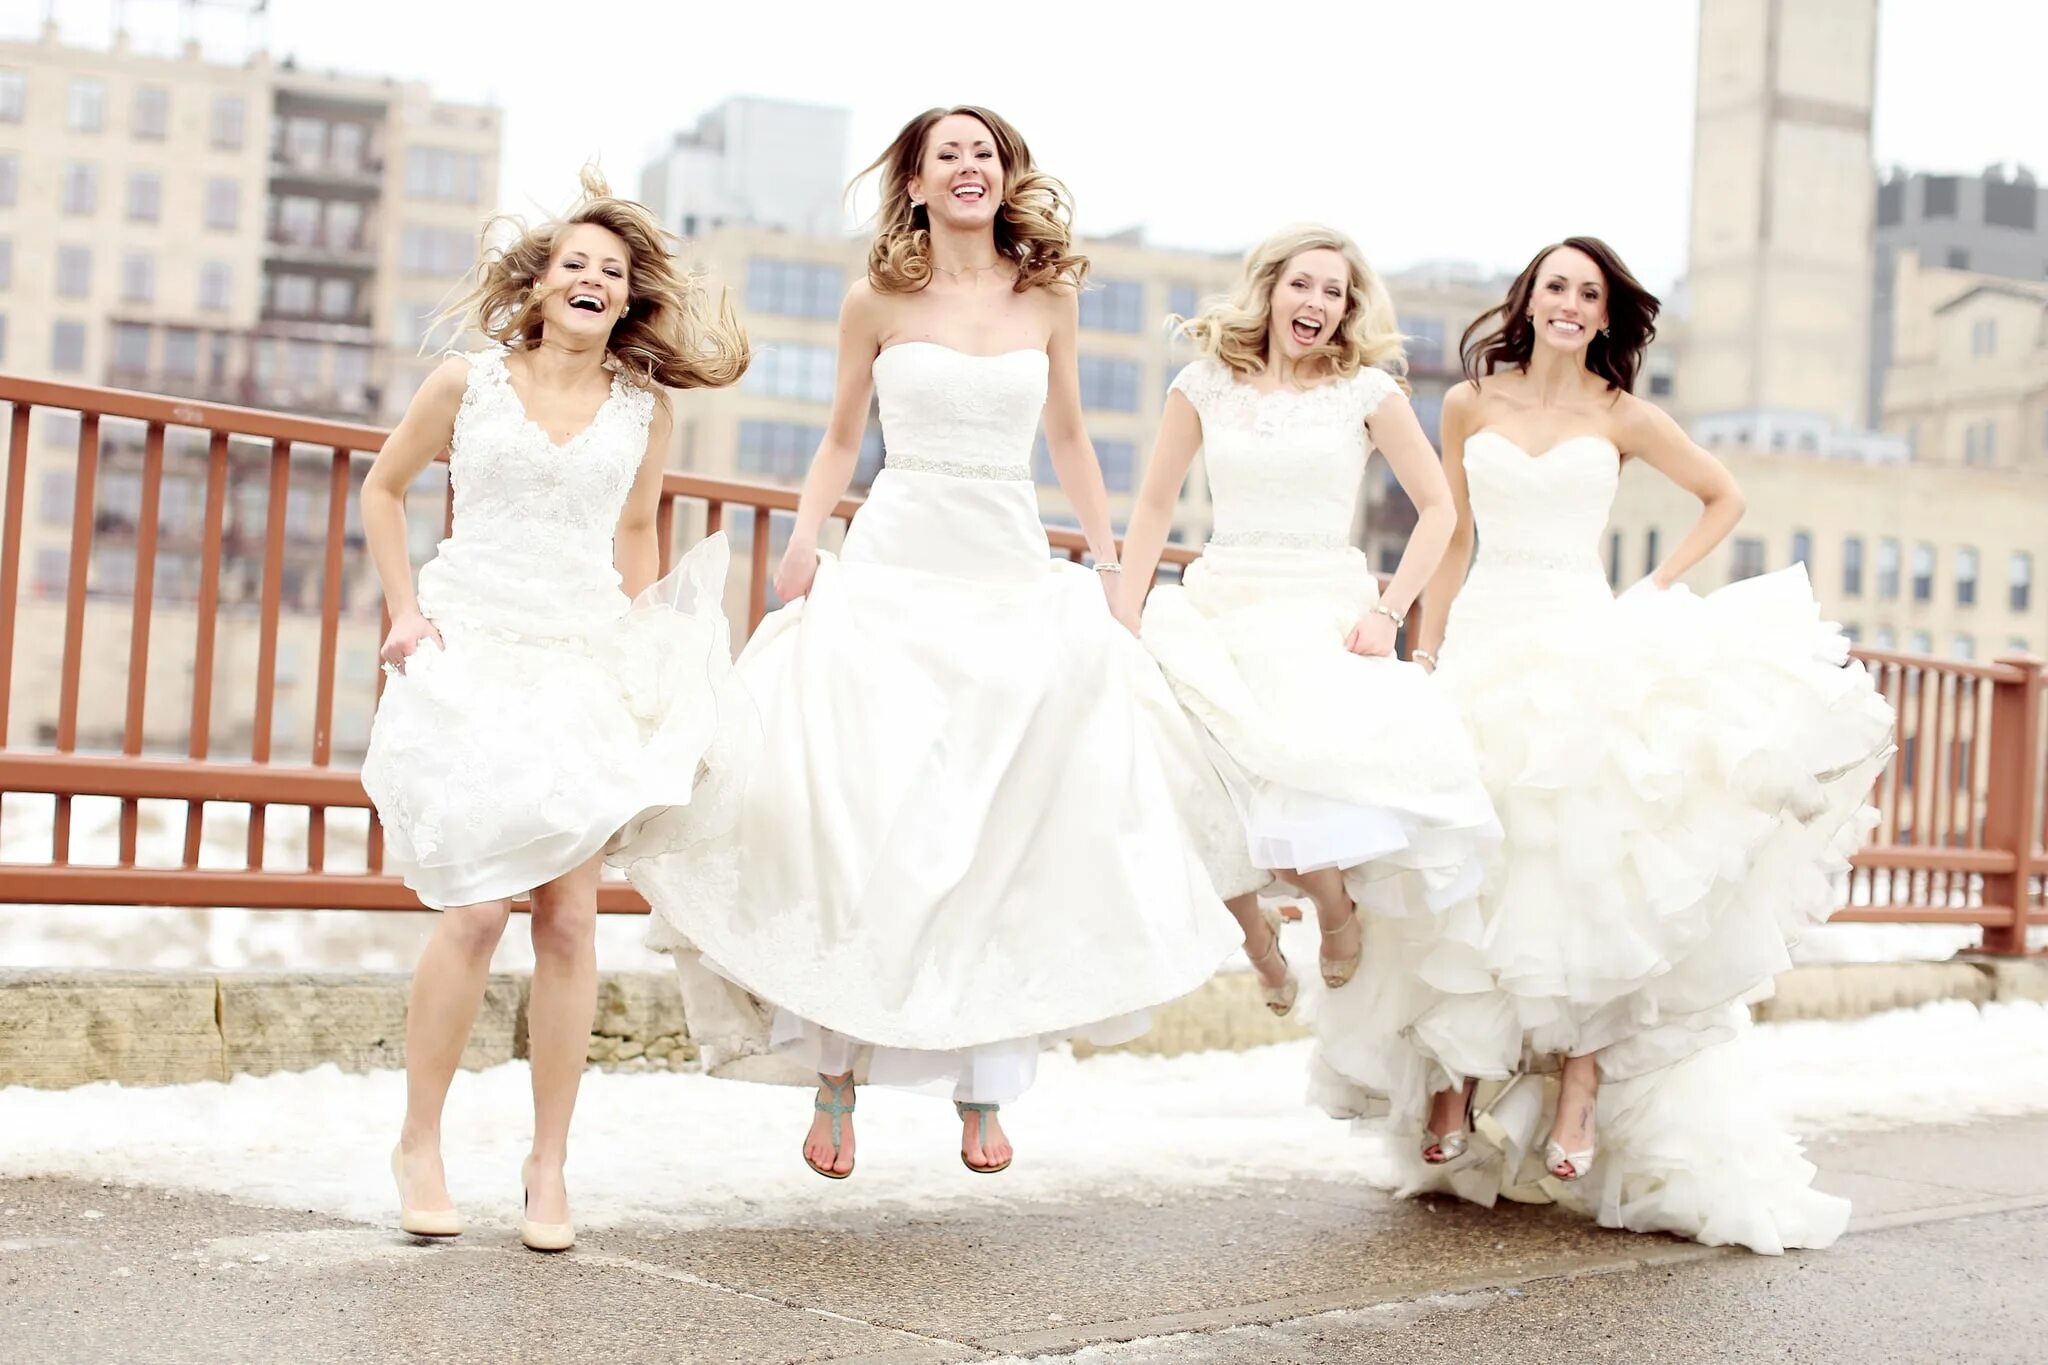 Была на свадьбе у подруги. Друзья в свадебных платьях. 4 Подружки на свадьбе. Четыре свадьбы подруги. Много девушек в свадебных платьях.